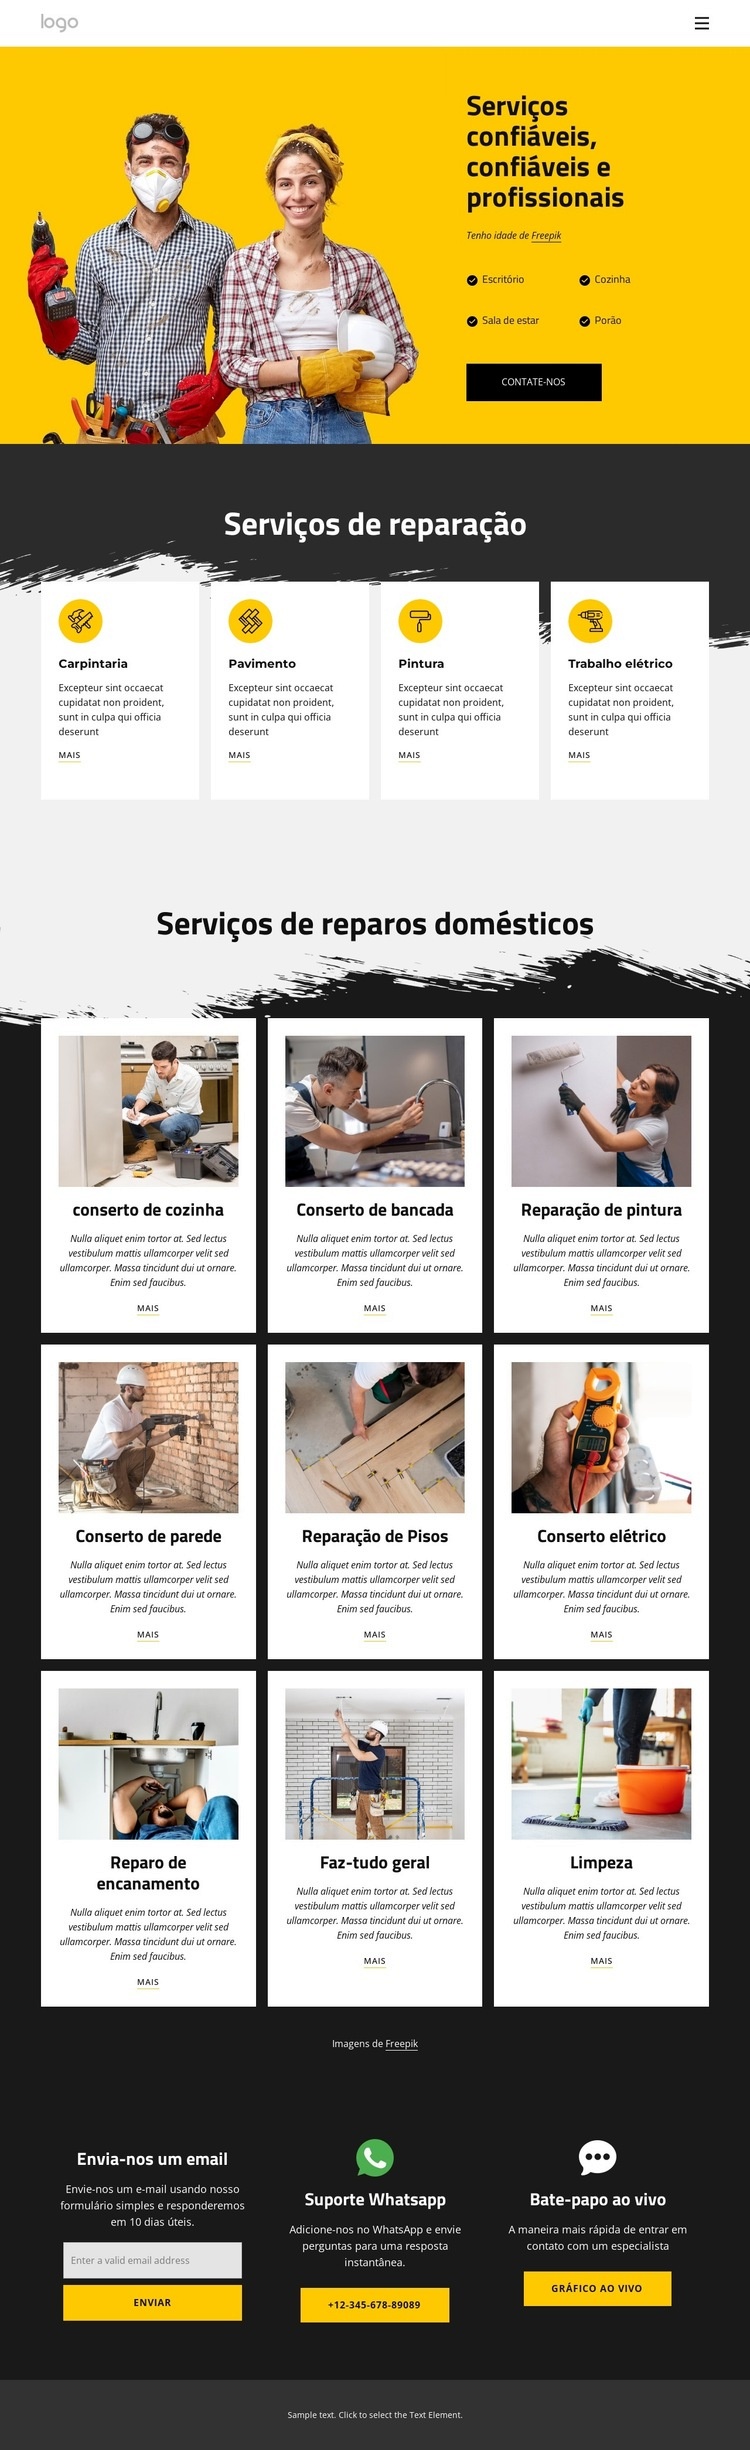 Serviços de mão de obra e reparos em casa Modelo HTML5